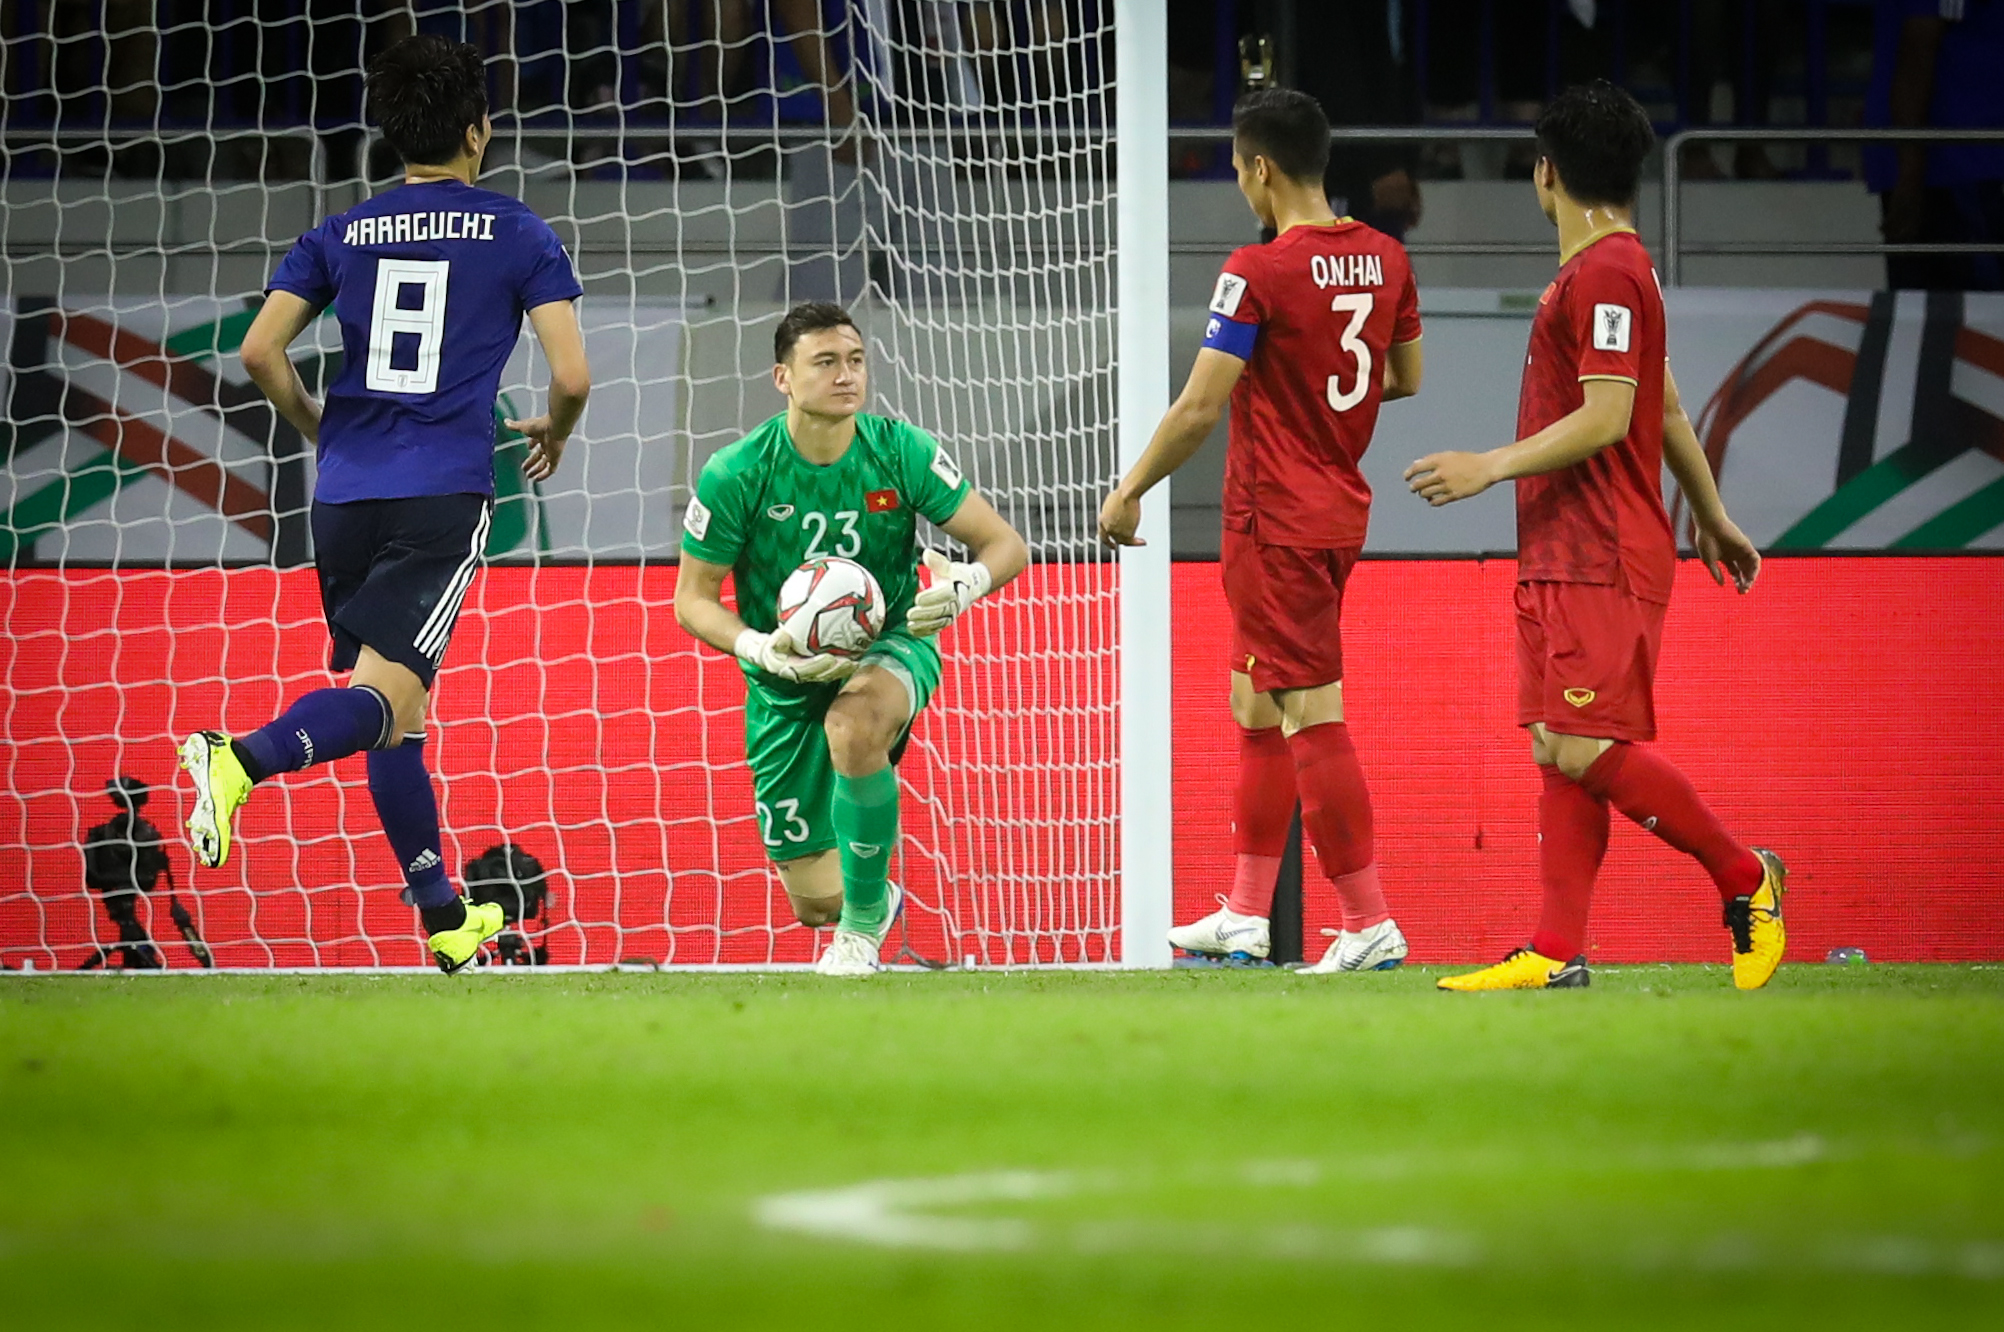 Văn Lâm đã có trận đấu xuất sắc trước Nhật Bản dù đội nhà thua trận (Ảnh: Thùy Minh/Vietnam+)